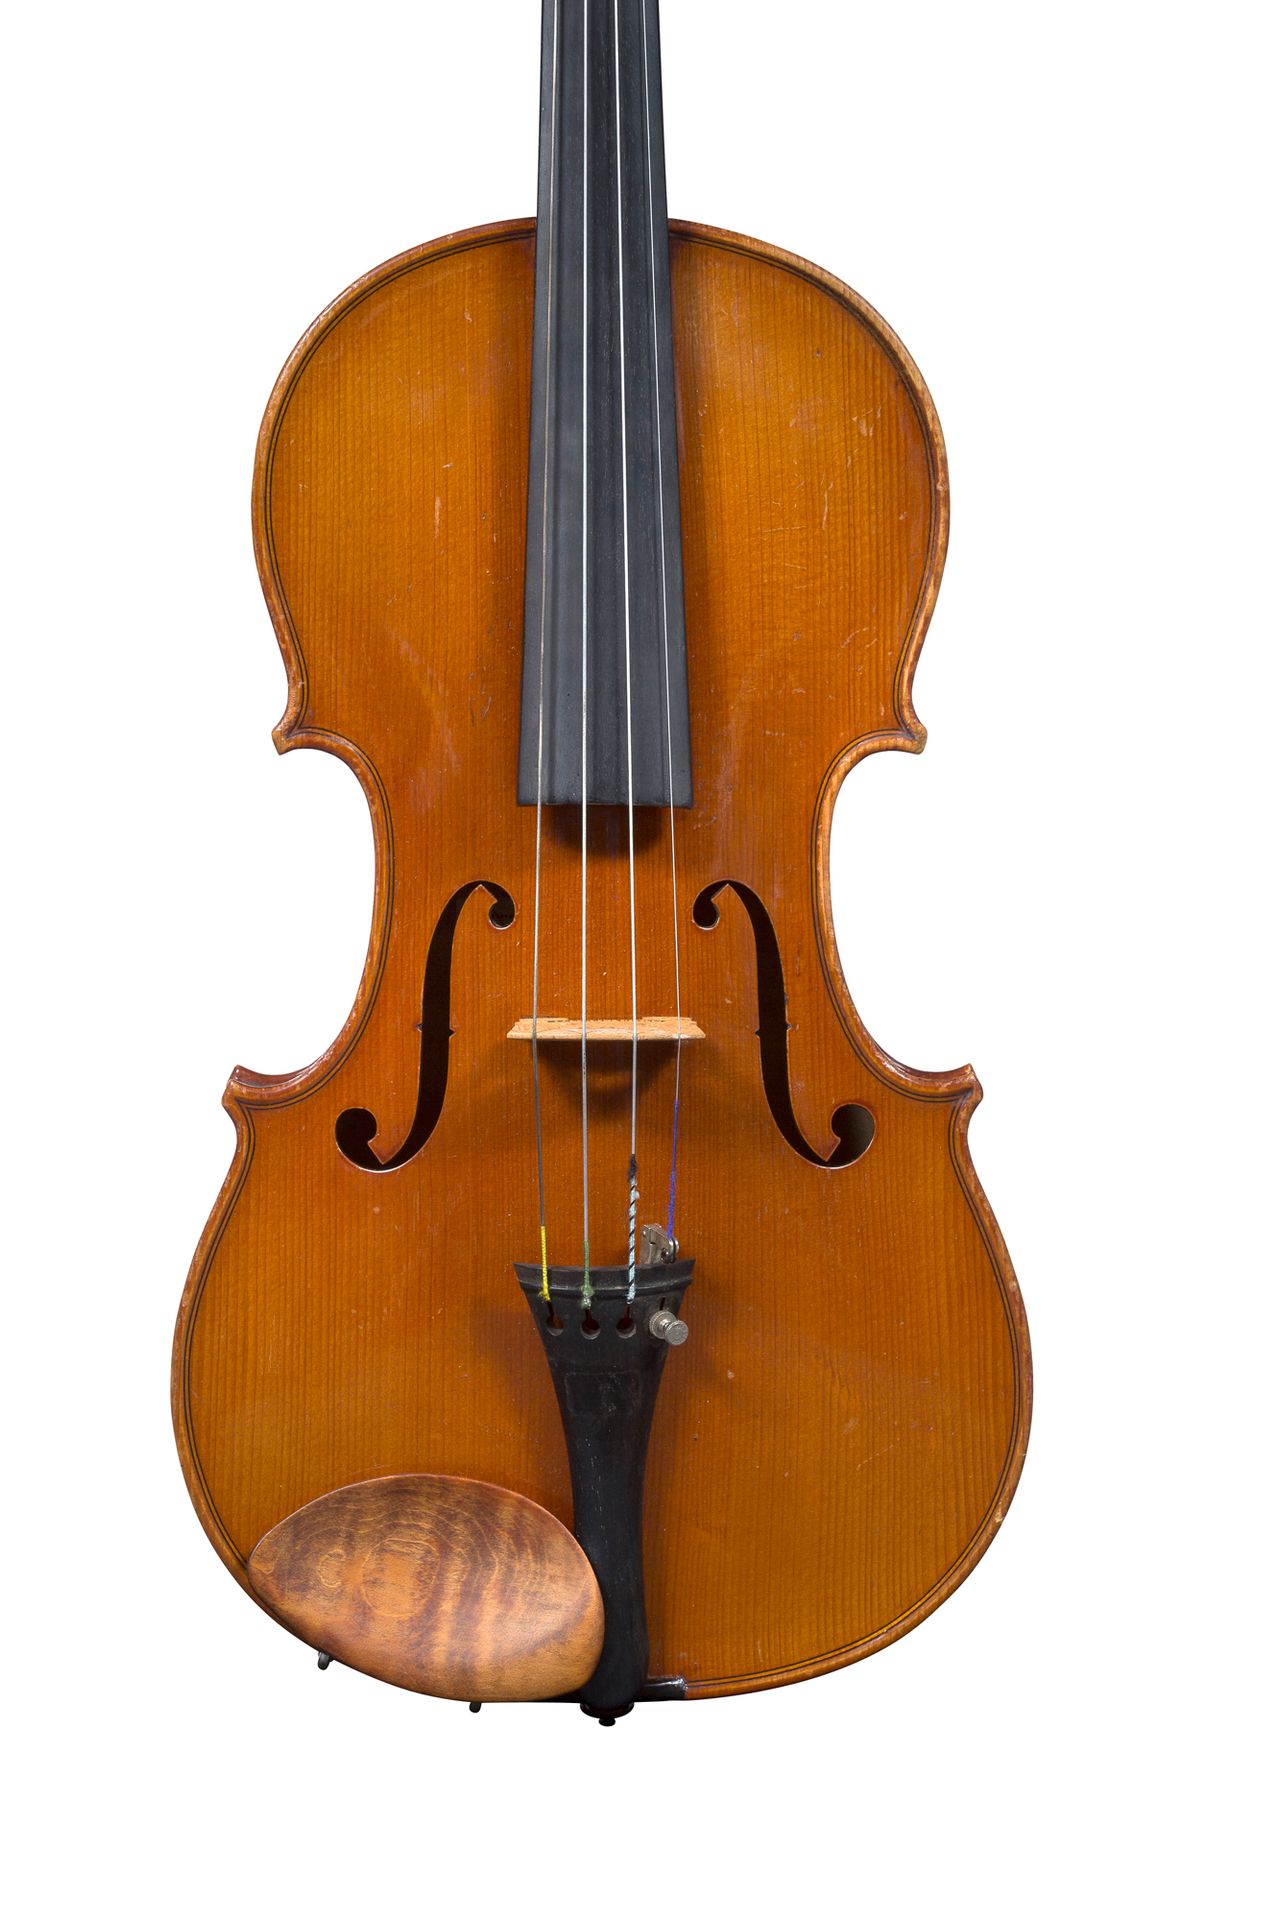 Null Violine von Gustave Villaume.
Hergestellt im Jahr 1929
Trägt das Etikett vo&hellip;